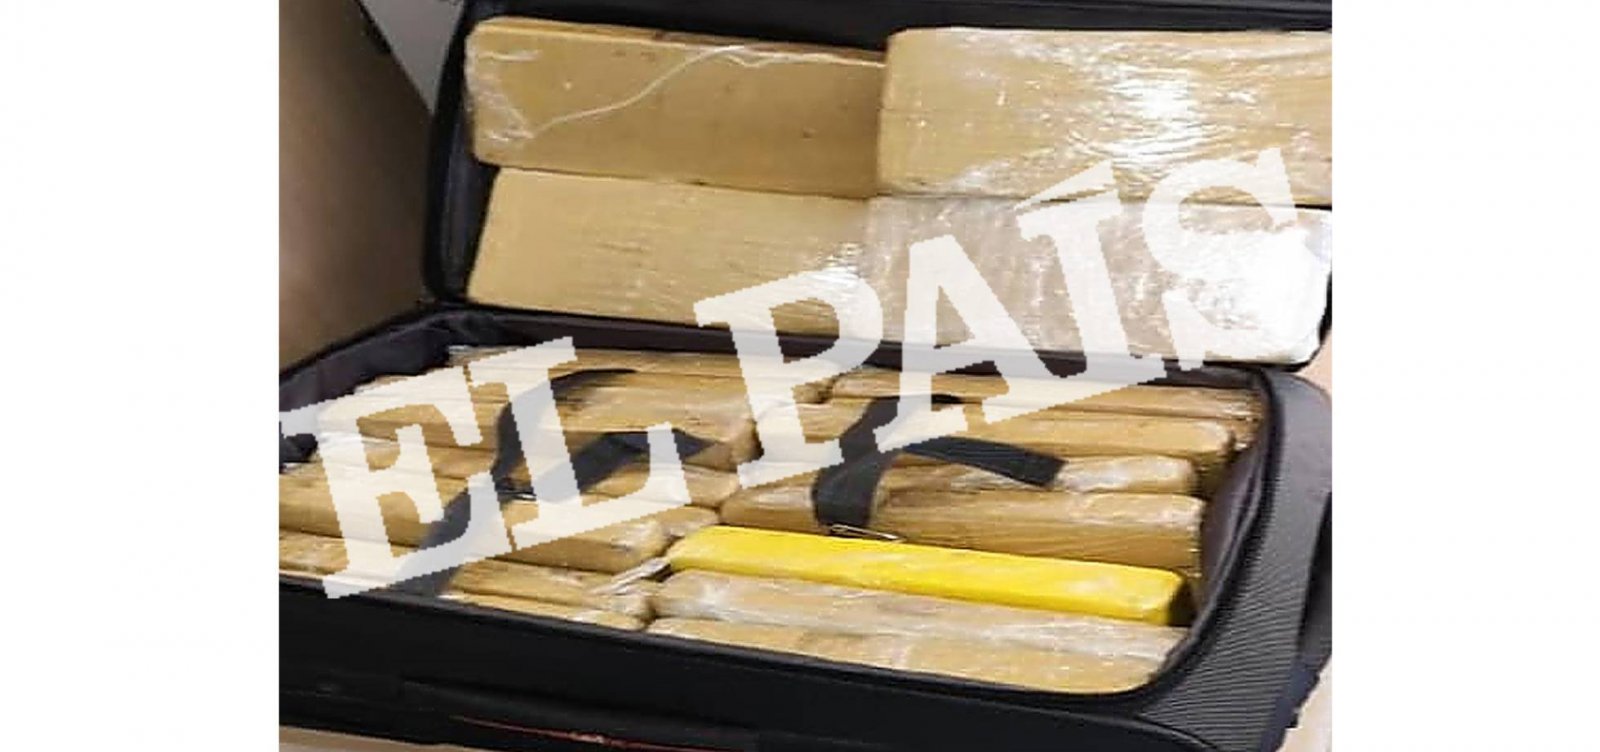 Jornal espanhol divulga foto da mala de sargento que levava 39 quilos de cocaína